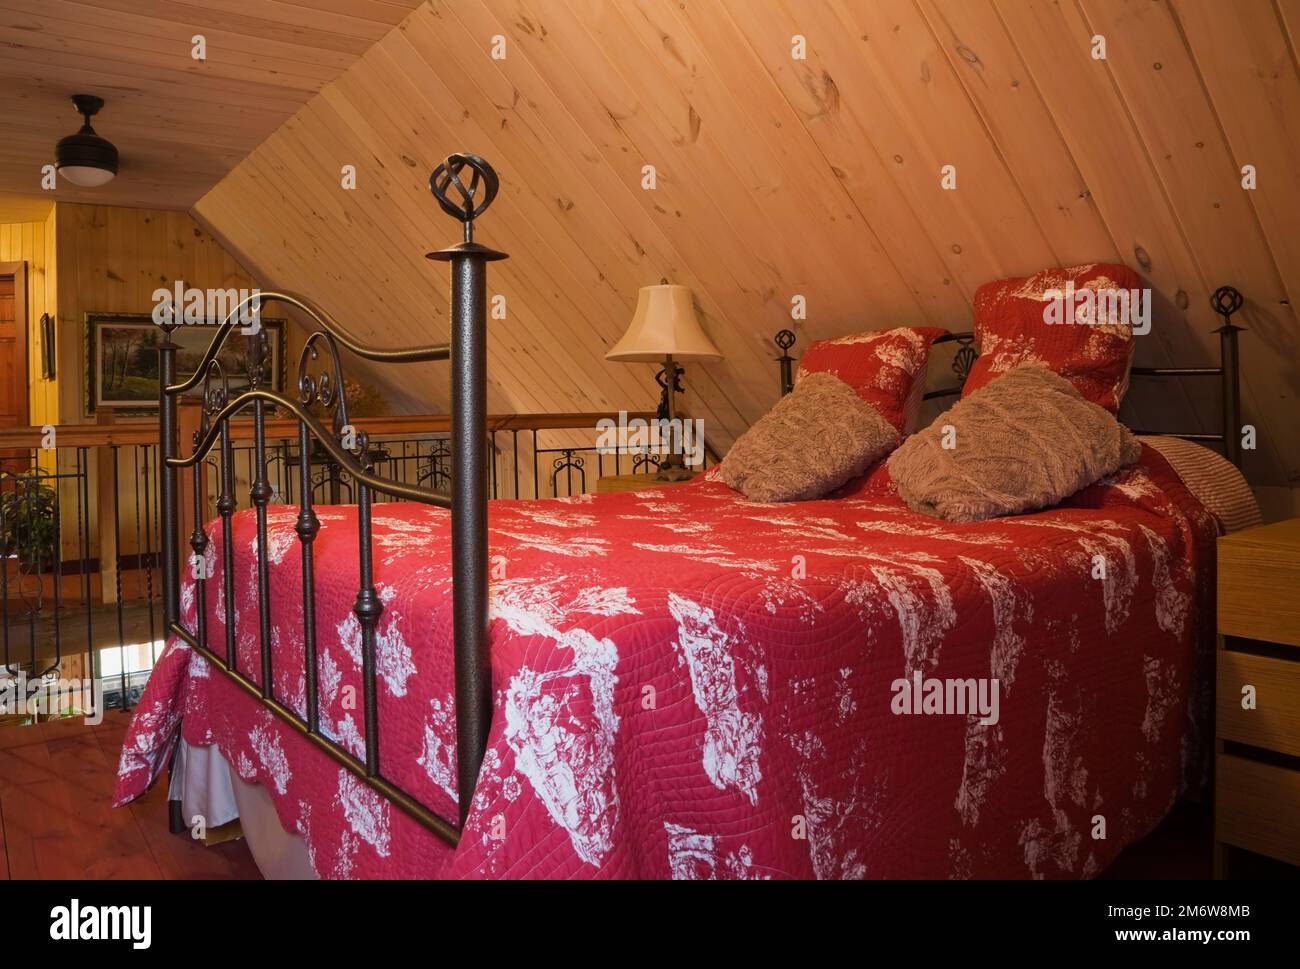 Letto queen size a baldacchino con testiera e poggiapiedi in ferro battuto nella camera da letto principale al piano superiore all'interno di una casa in legno. Foto Stock